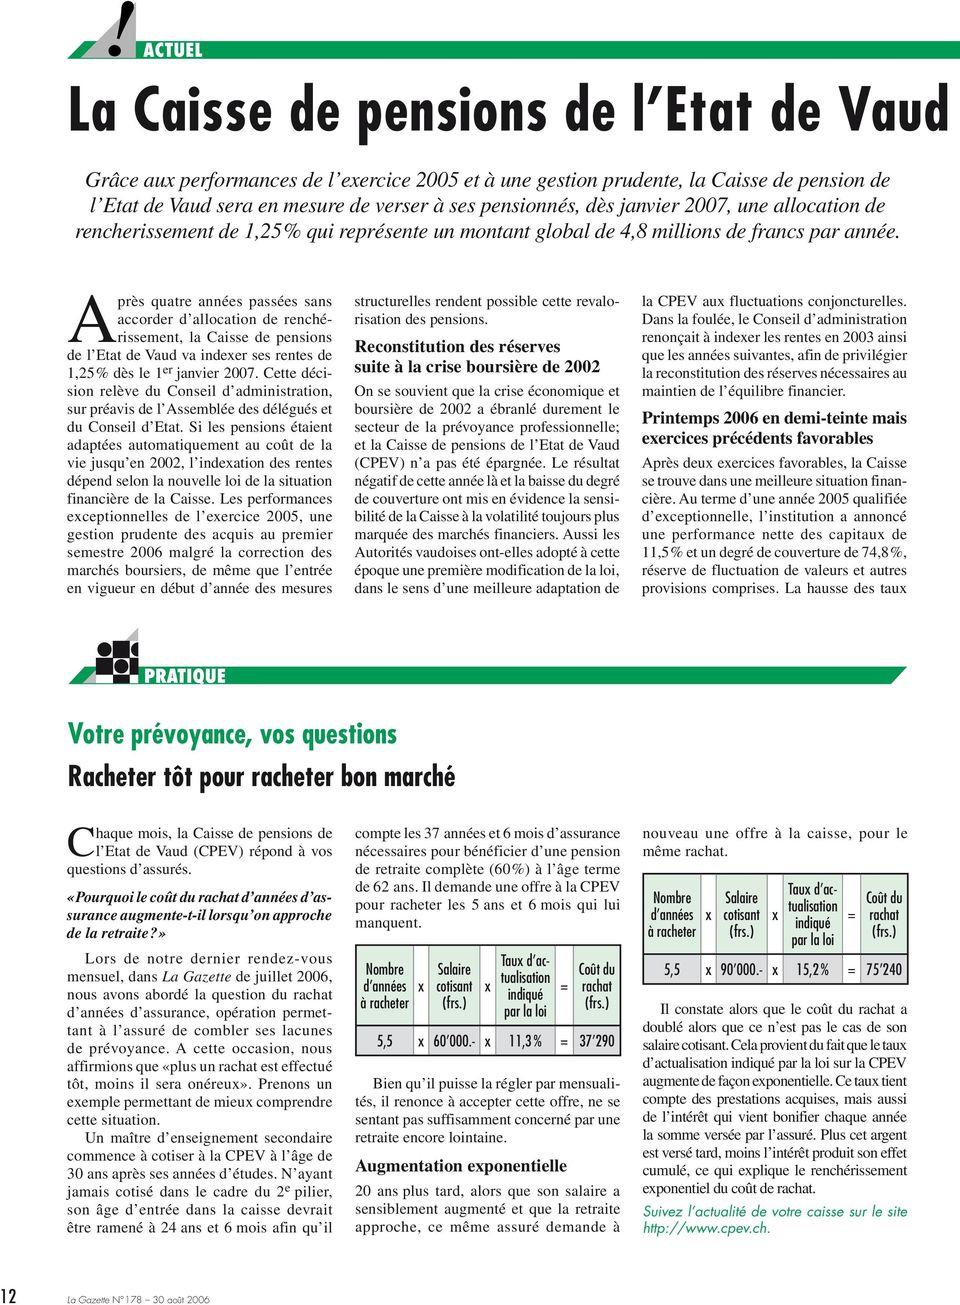 Après quatre années passées sans accorder d allocation de renchérissement, la Caisse de pensions de l Etat de Vaud va indexer ses rentes de 1,25% dès le 1 er janvier 2007.